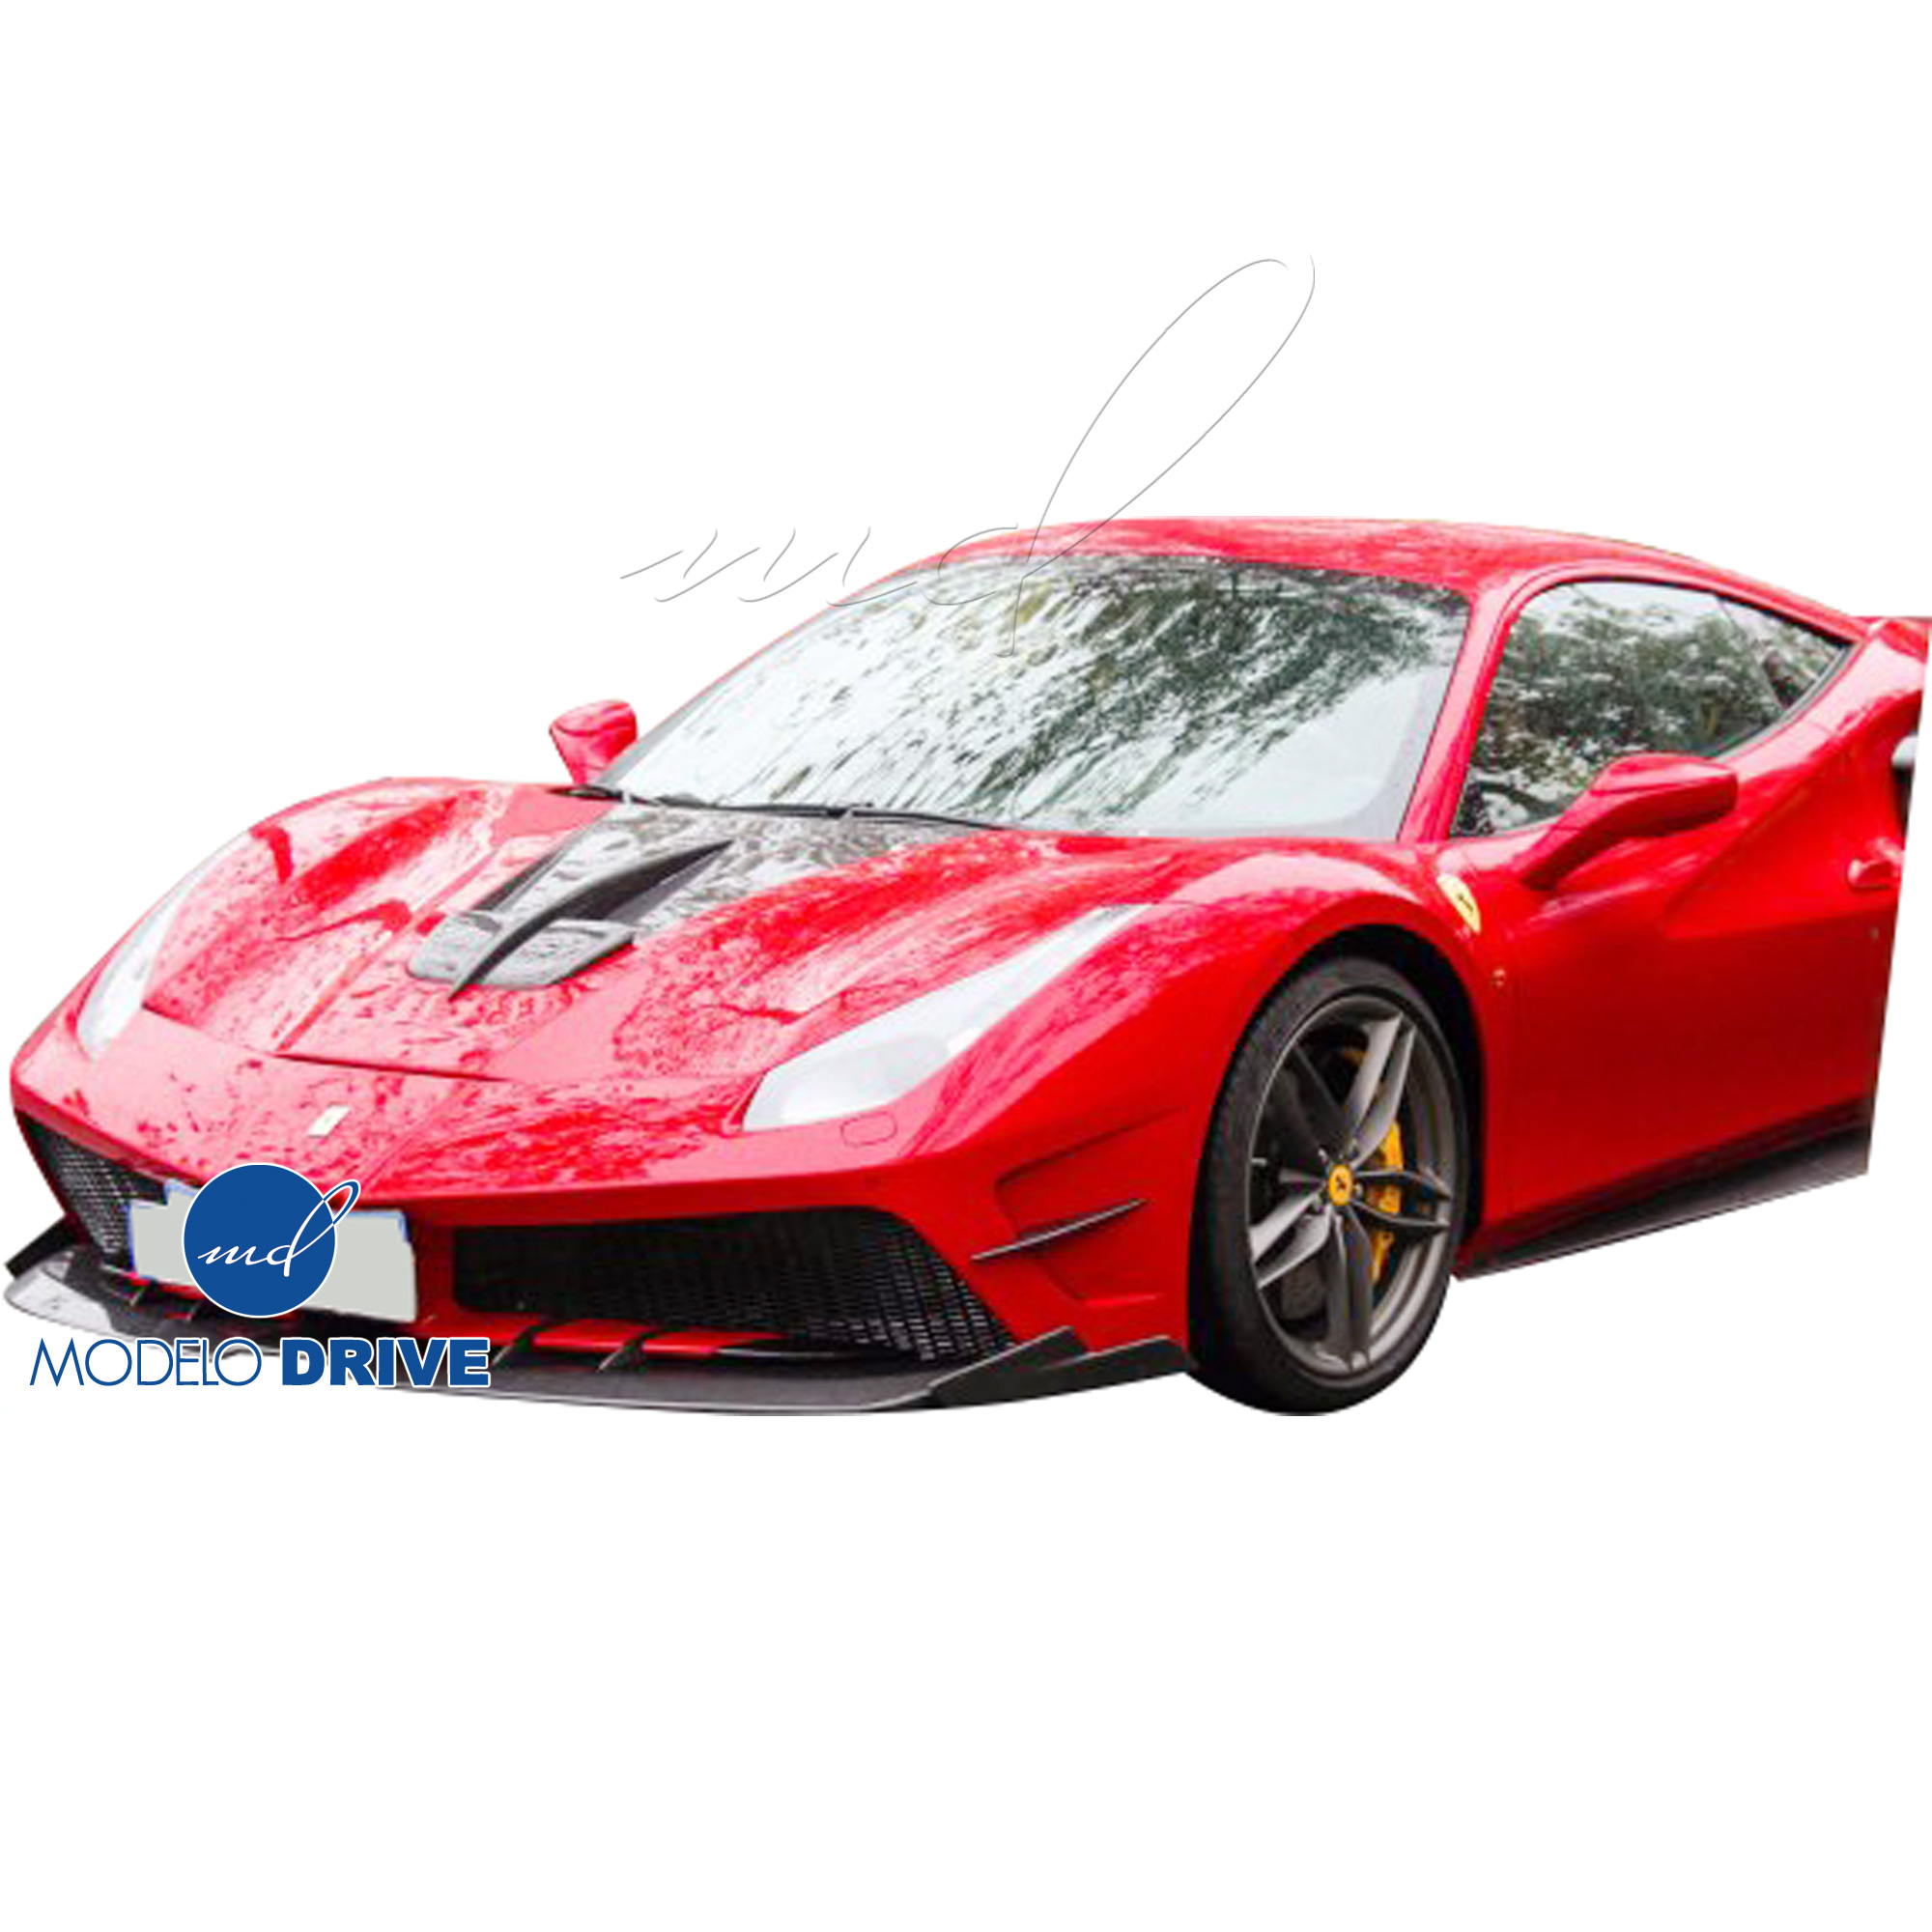 ModeloDrive Partial Carbon Fiber MDES Front Bumper w Splitter > Ferrari 488 GTB F142M 2016-2019 - Image 4